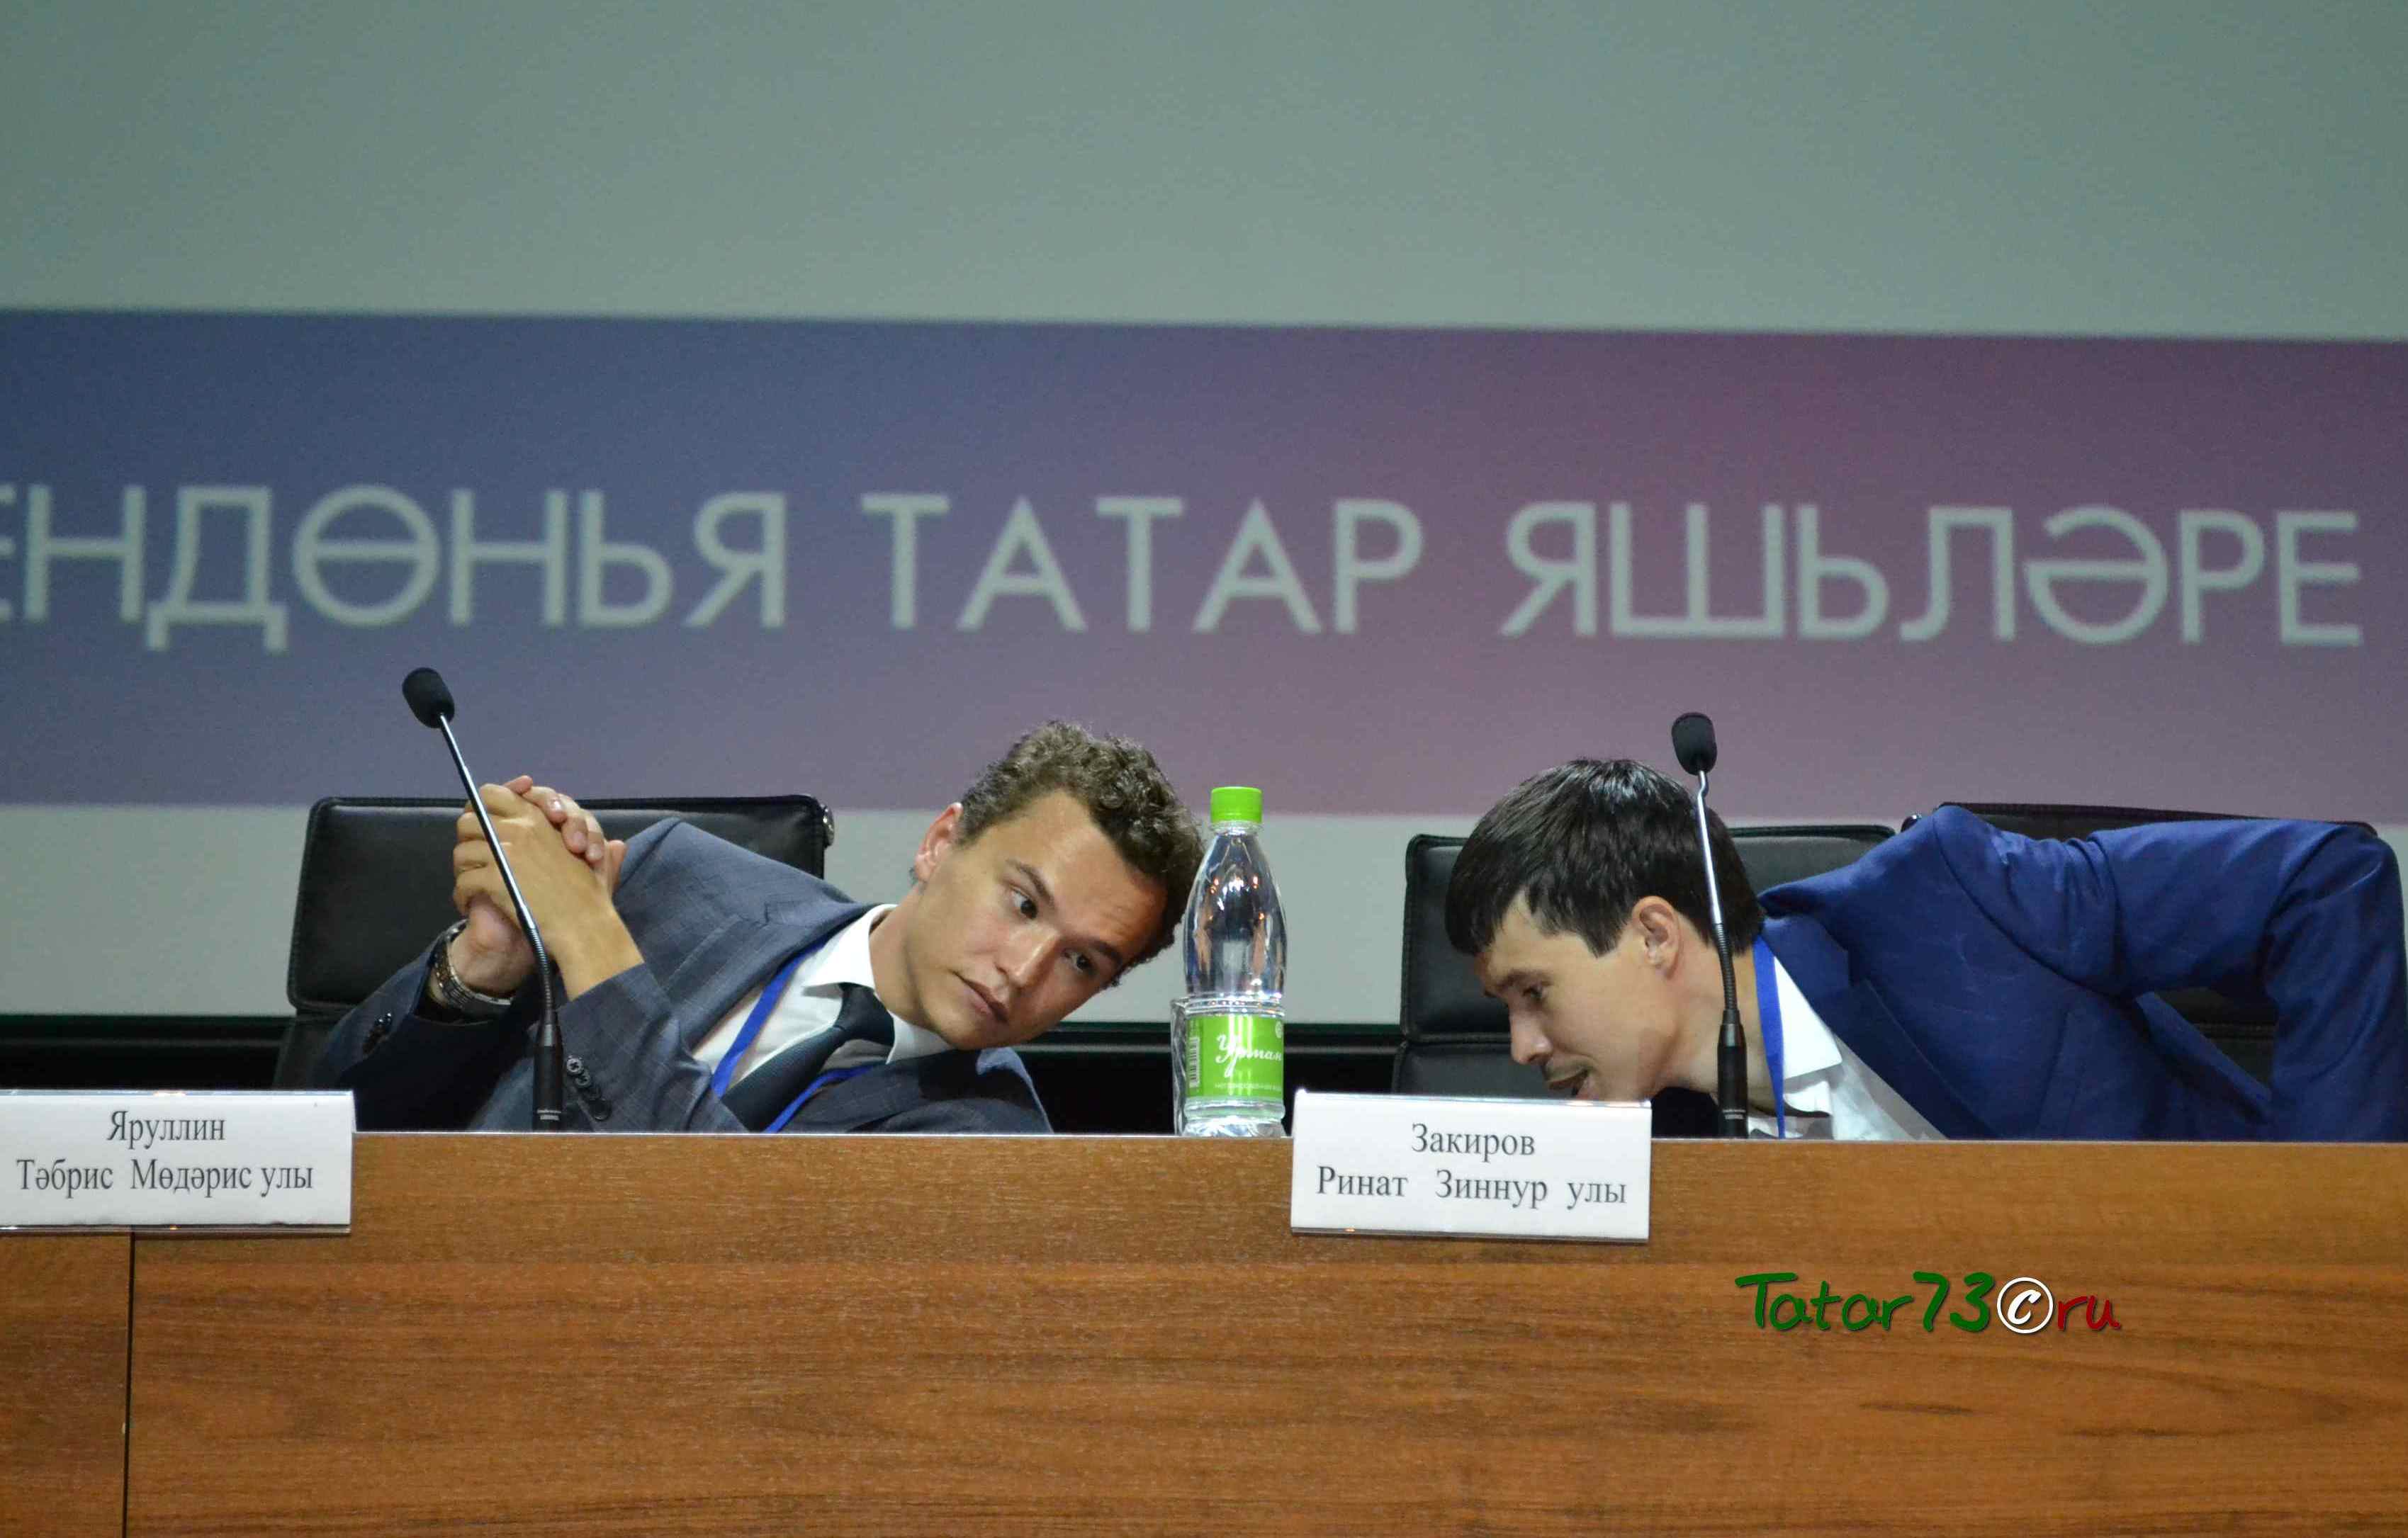 Избран руководящий состав Всемирного форума татарской молодежи